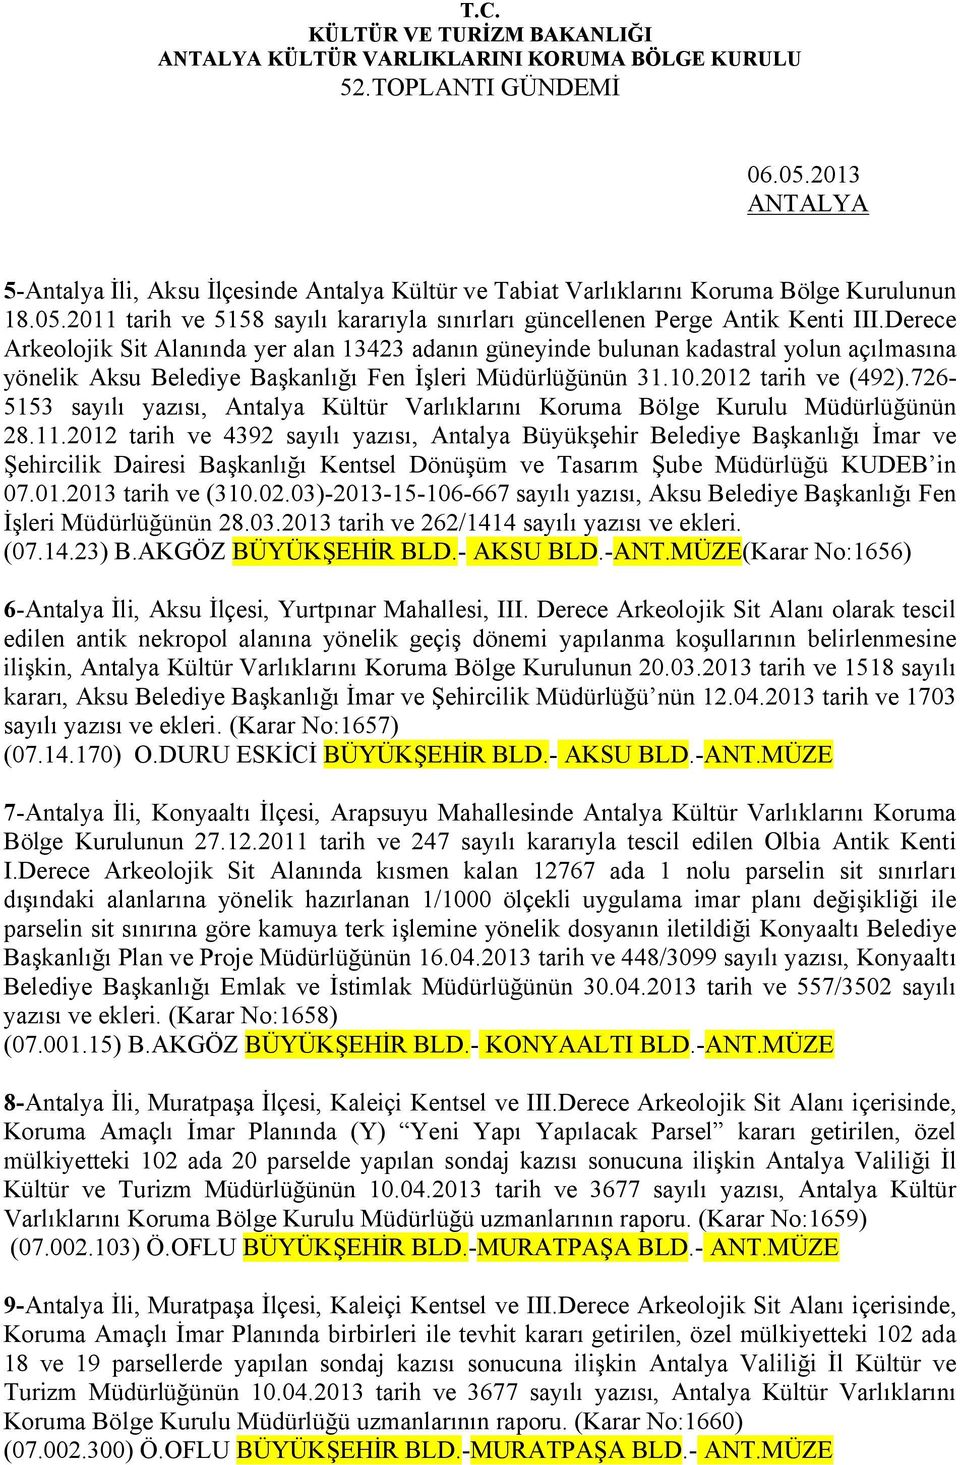 726-5153 sayılı yazısı, Antalya Kültür Varlıklarını Koruma Bölge Kurulu Müdürlüğünün 28.11.